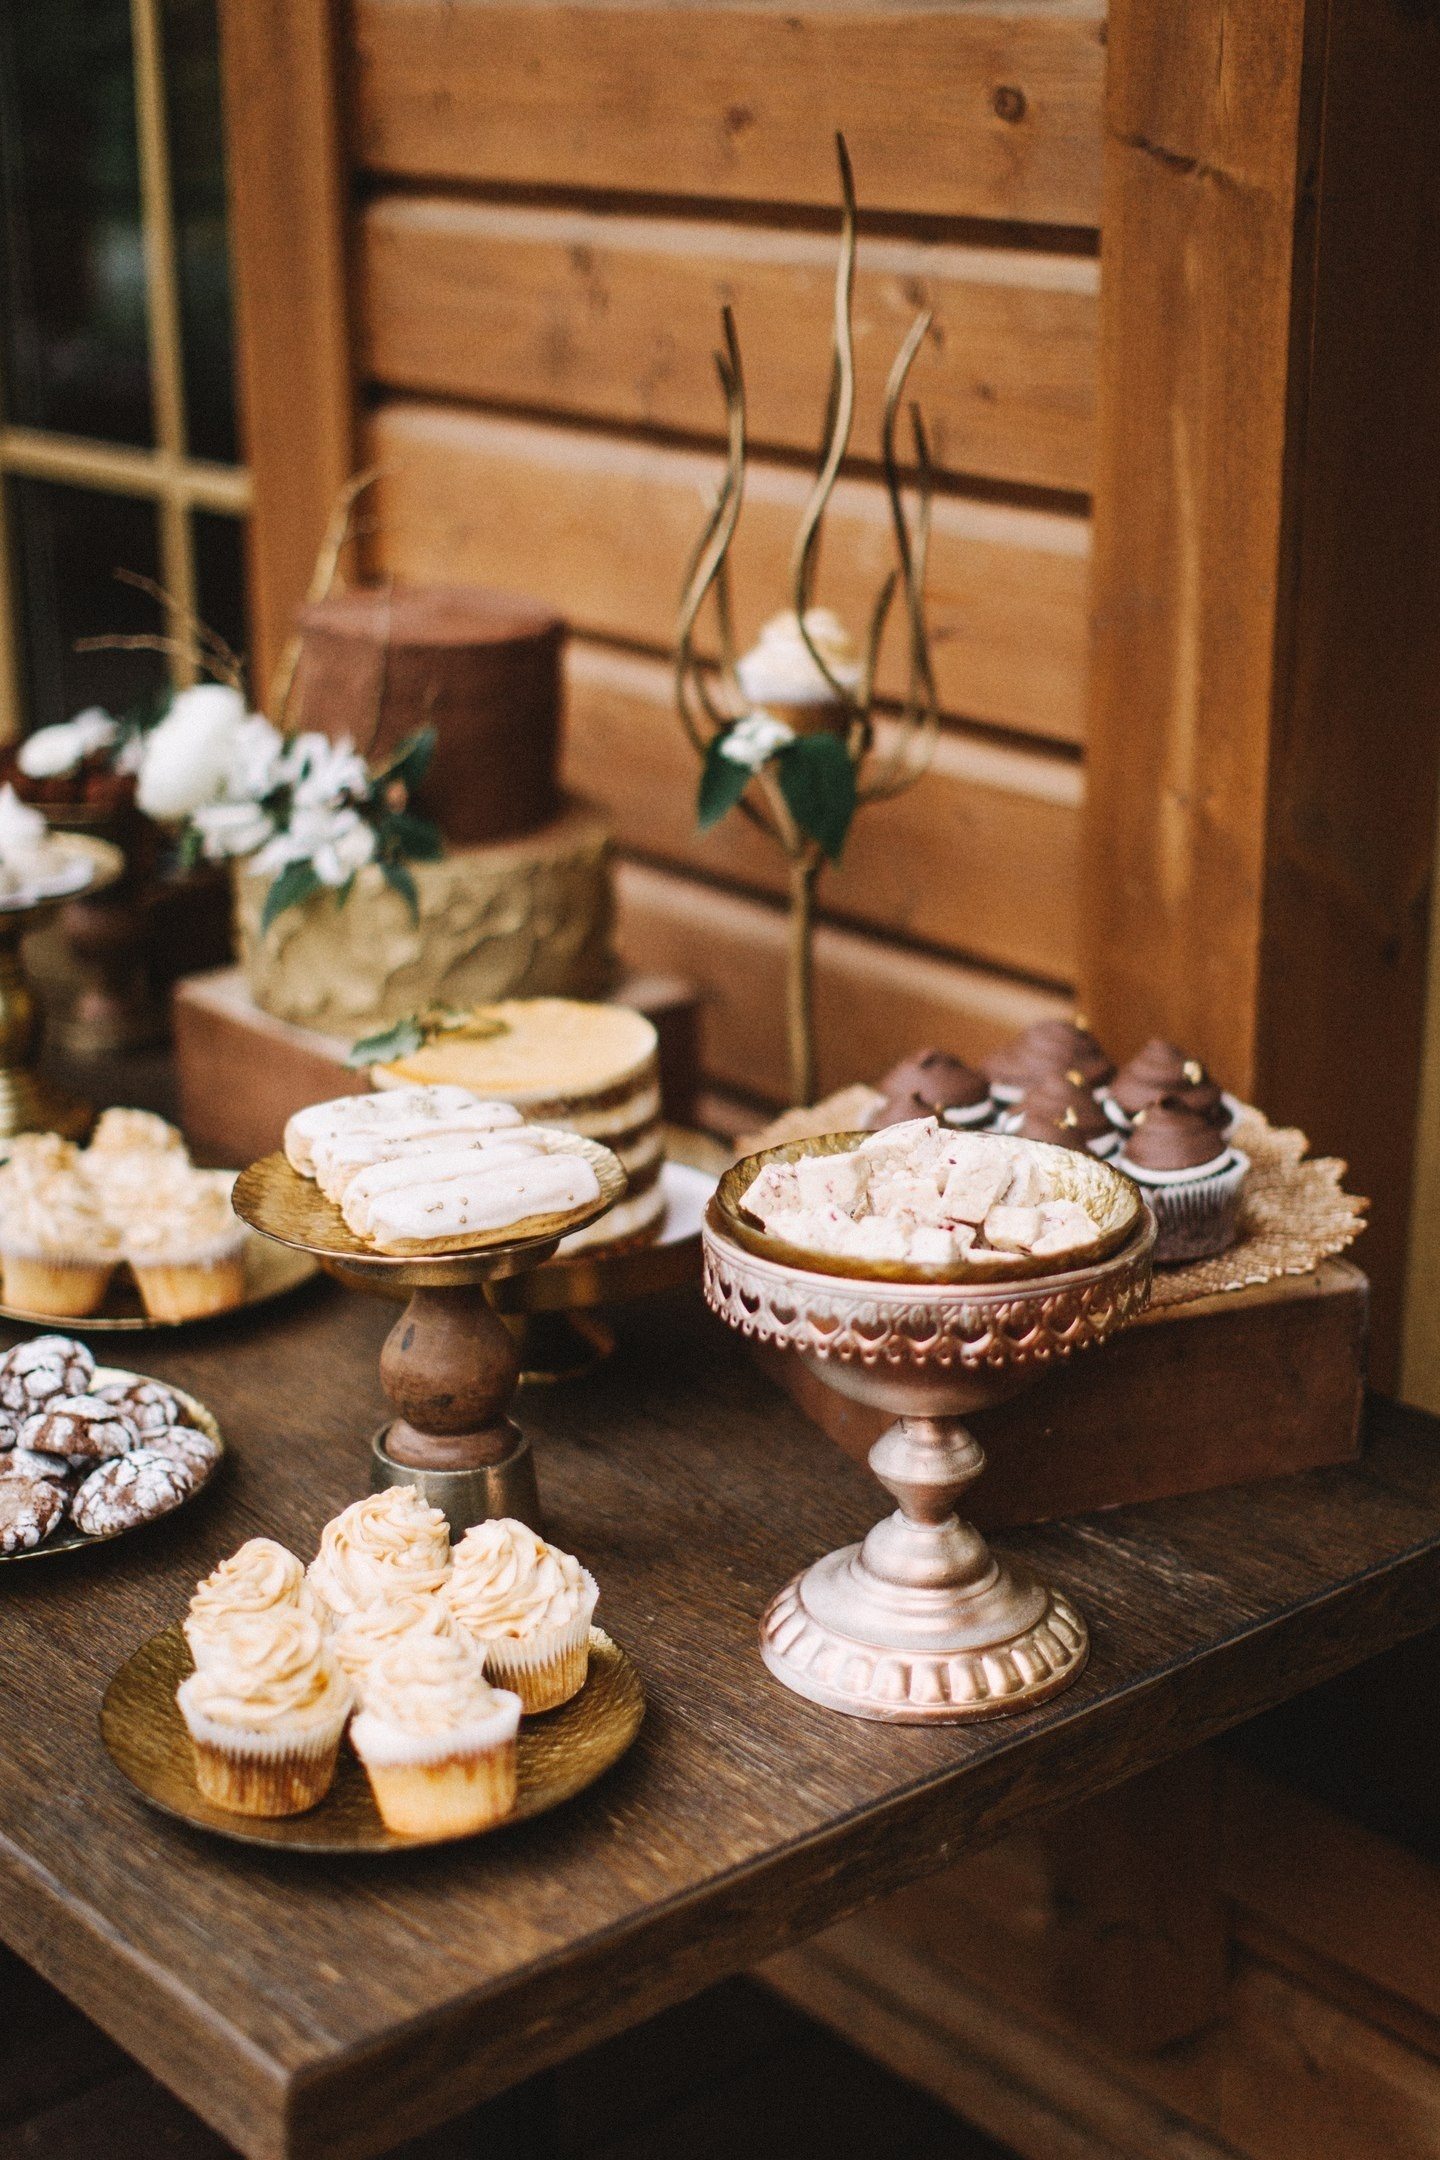 Kırılmış çikolata, trüf mantarı, mocha havadar tatlılar, kahve çekirdeği ile süslenmiş ve düğün tarzında buzlu ajur kurabiyeleri, yaşlı kutuları ve süslü standları ile harika görünüyor